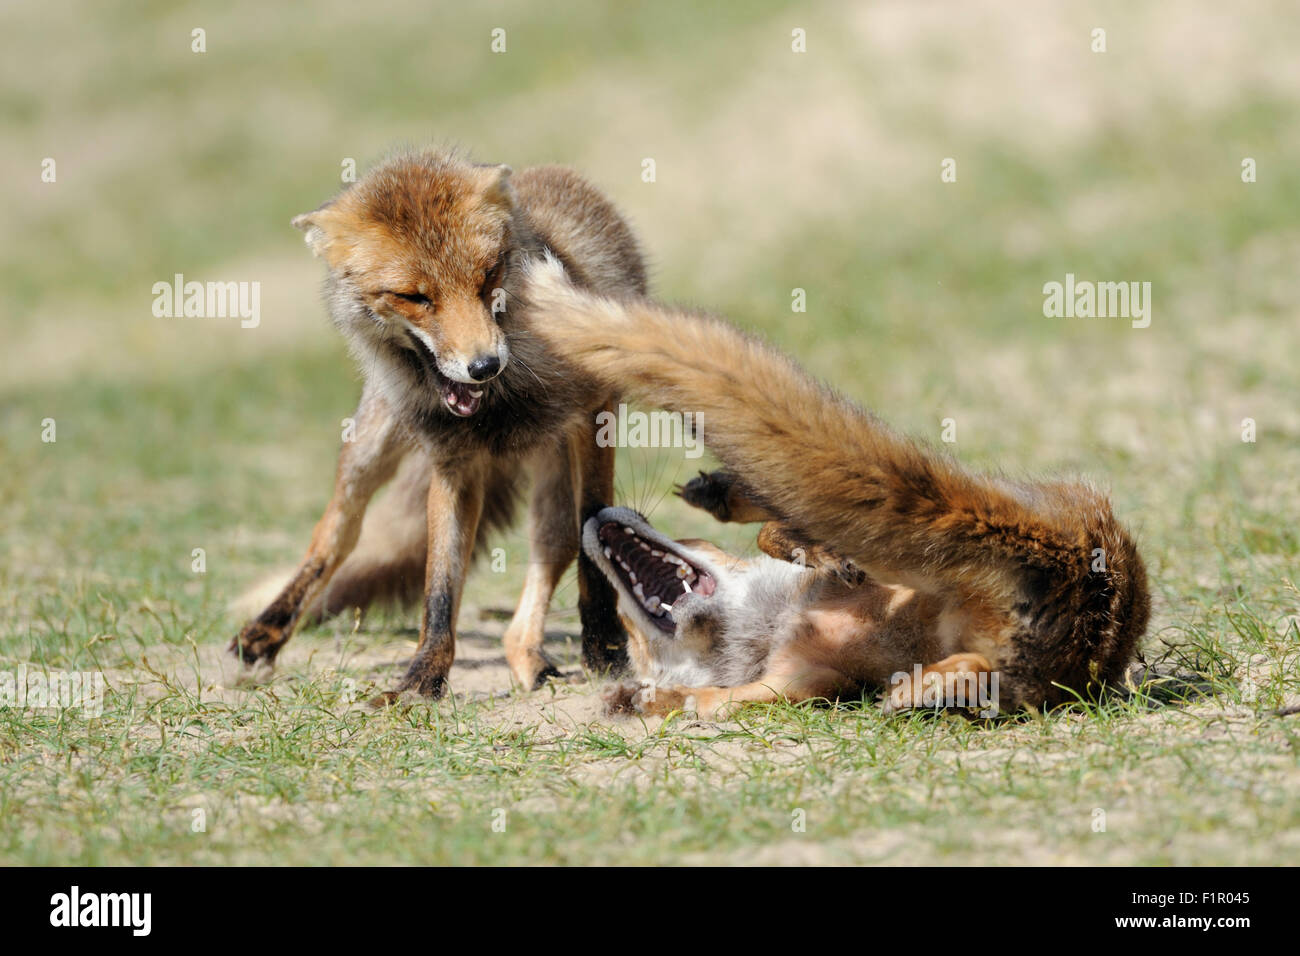 Deux renards roux / Rotfuechse ( Vulpes vulpes ), rivaux dans la lutte acharnée, la lutte, la poursuite de l'autre. Banque D'Images